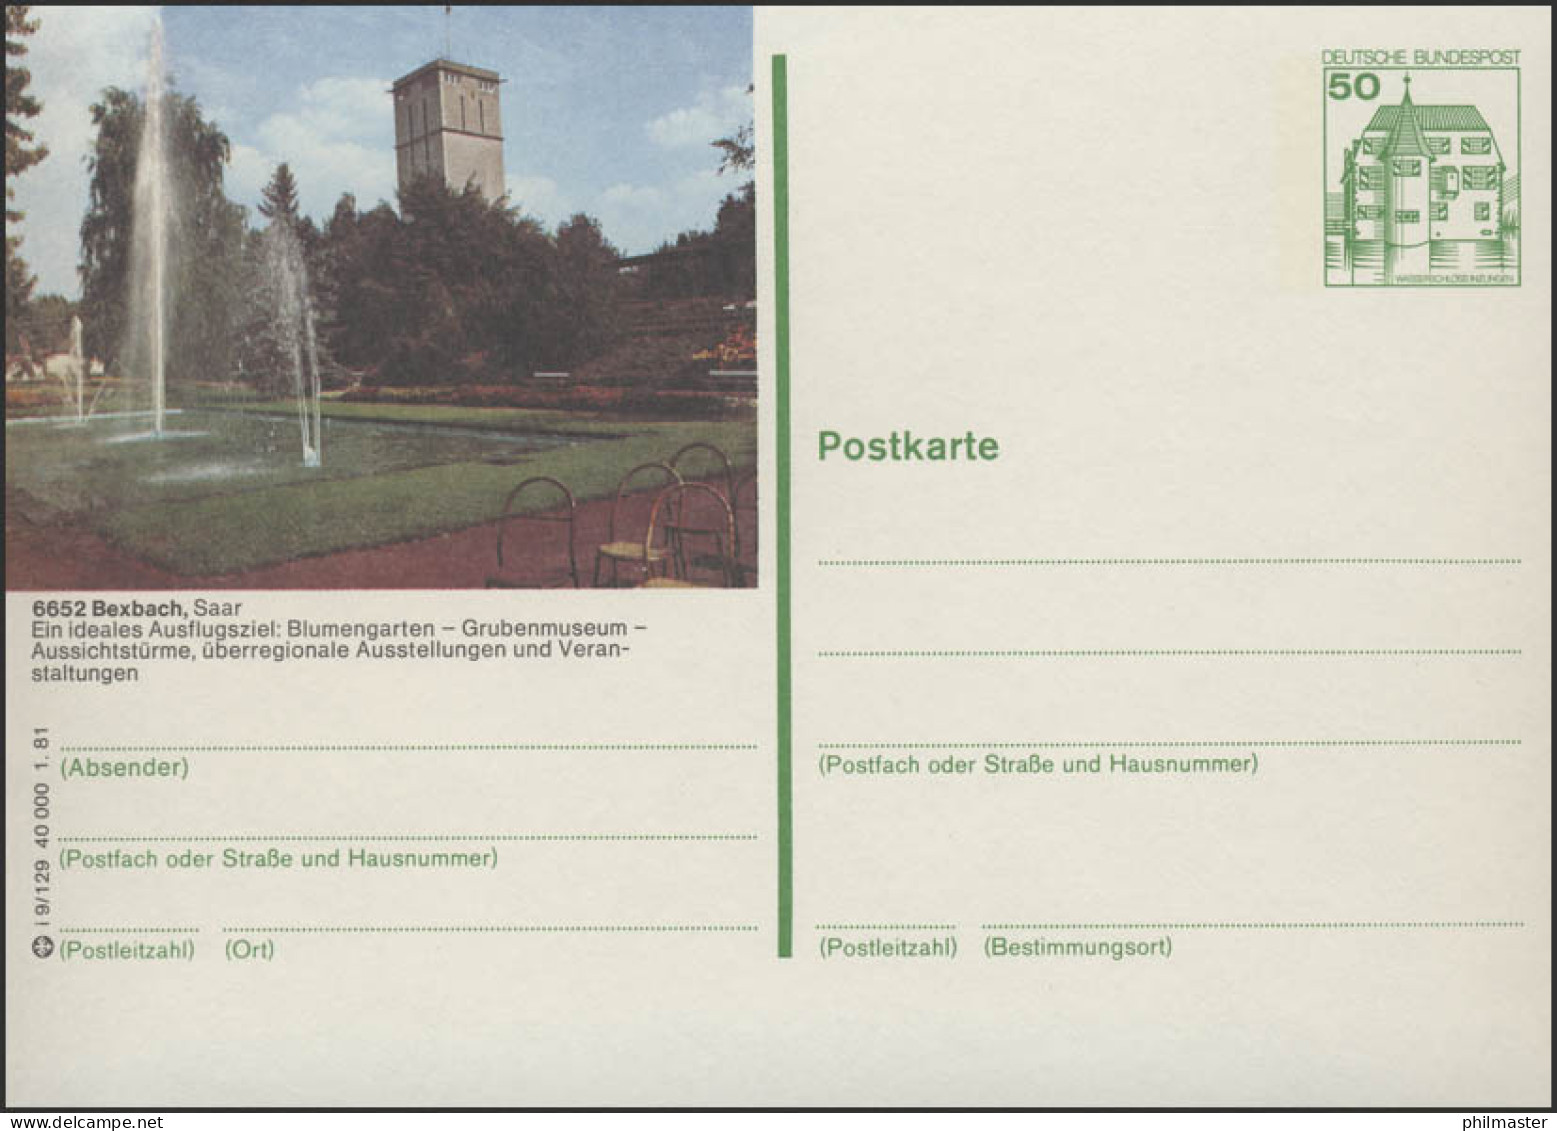 P134-i9/129 - 6652 Bexbach - Blumengarten Grubenmuseum ** - Postales Ilustrados - Nuevos